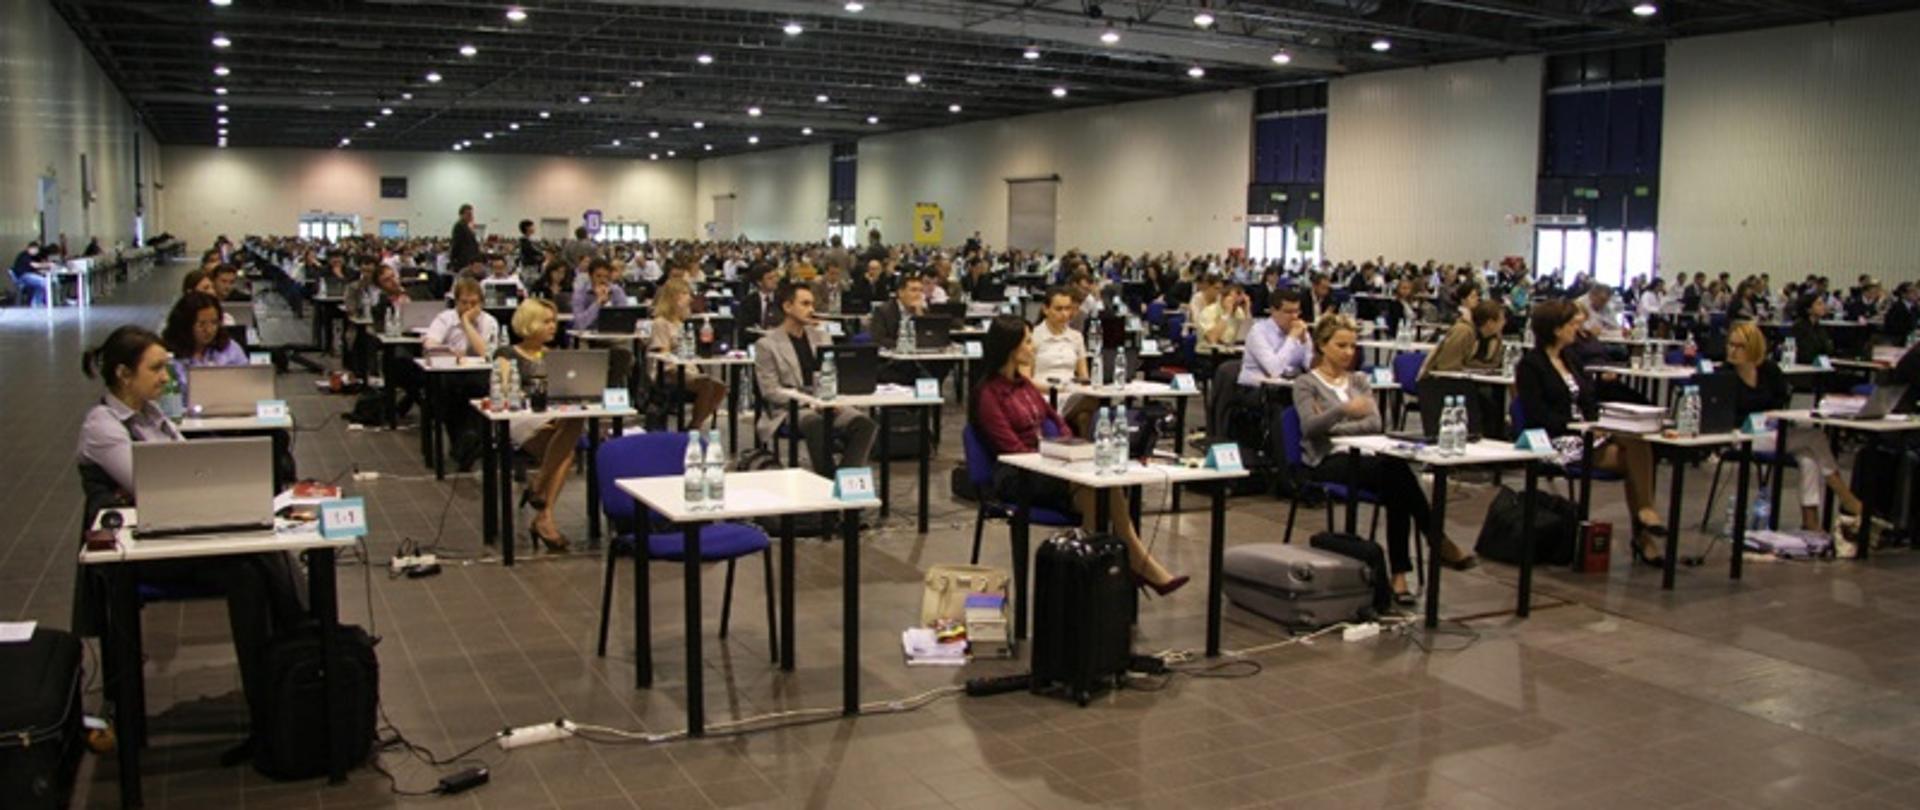 542 prawników zdawało egzamin notarialny